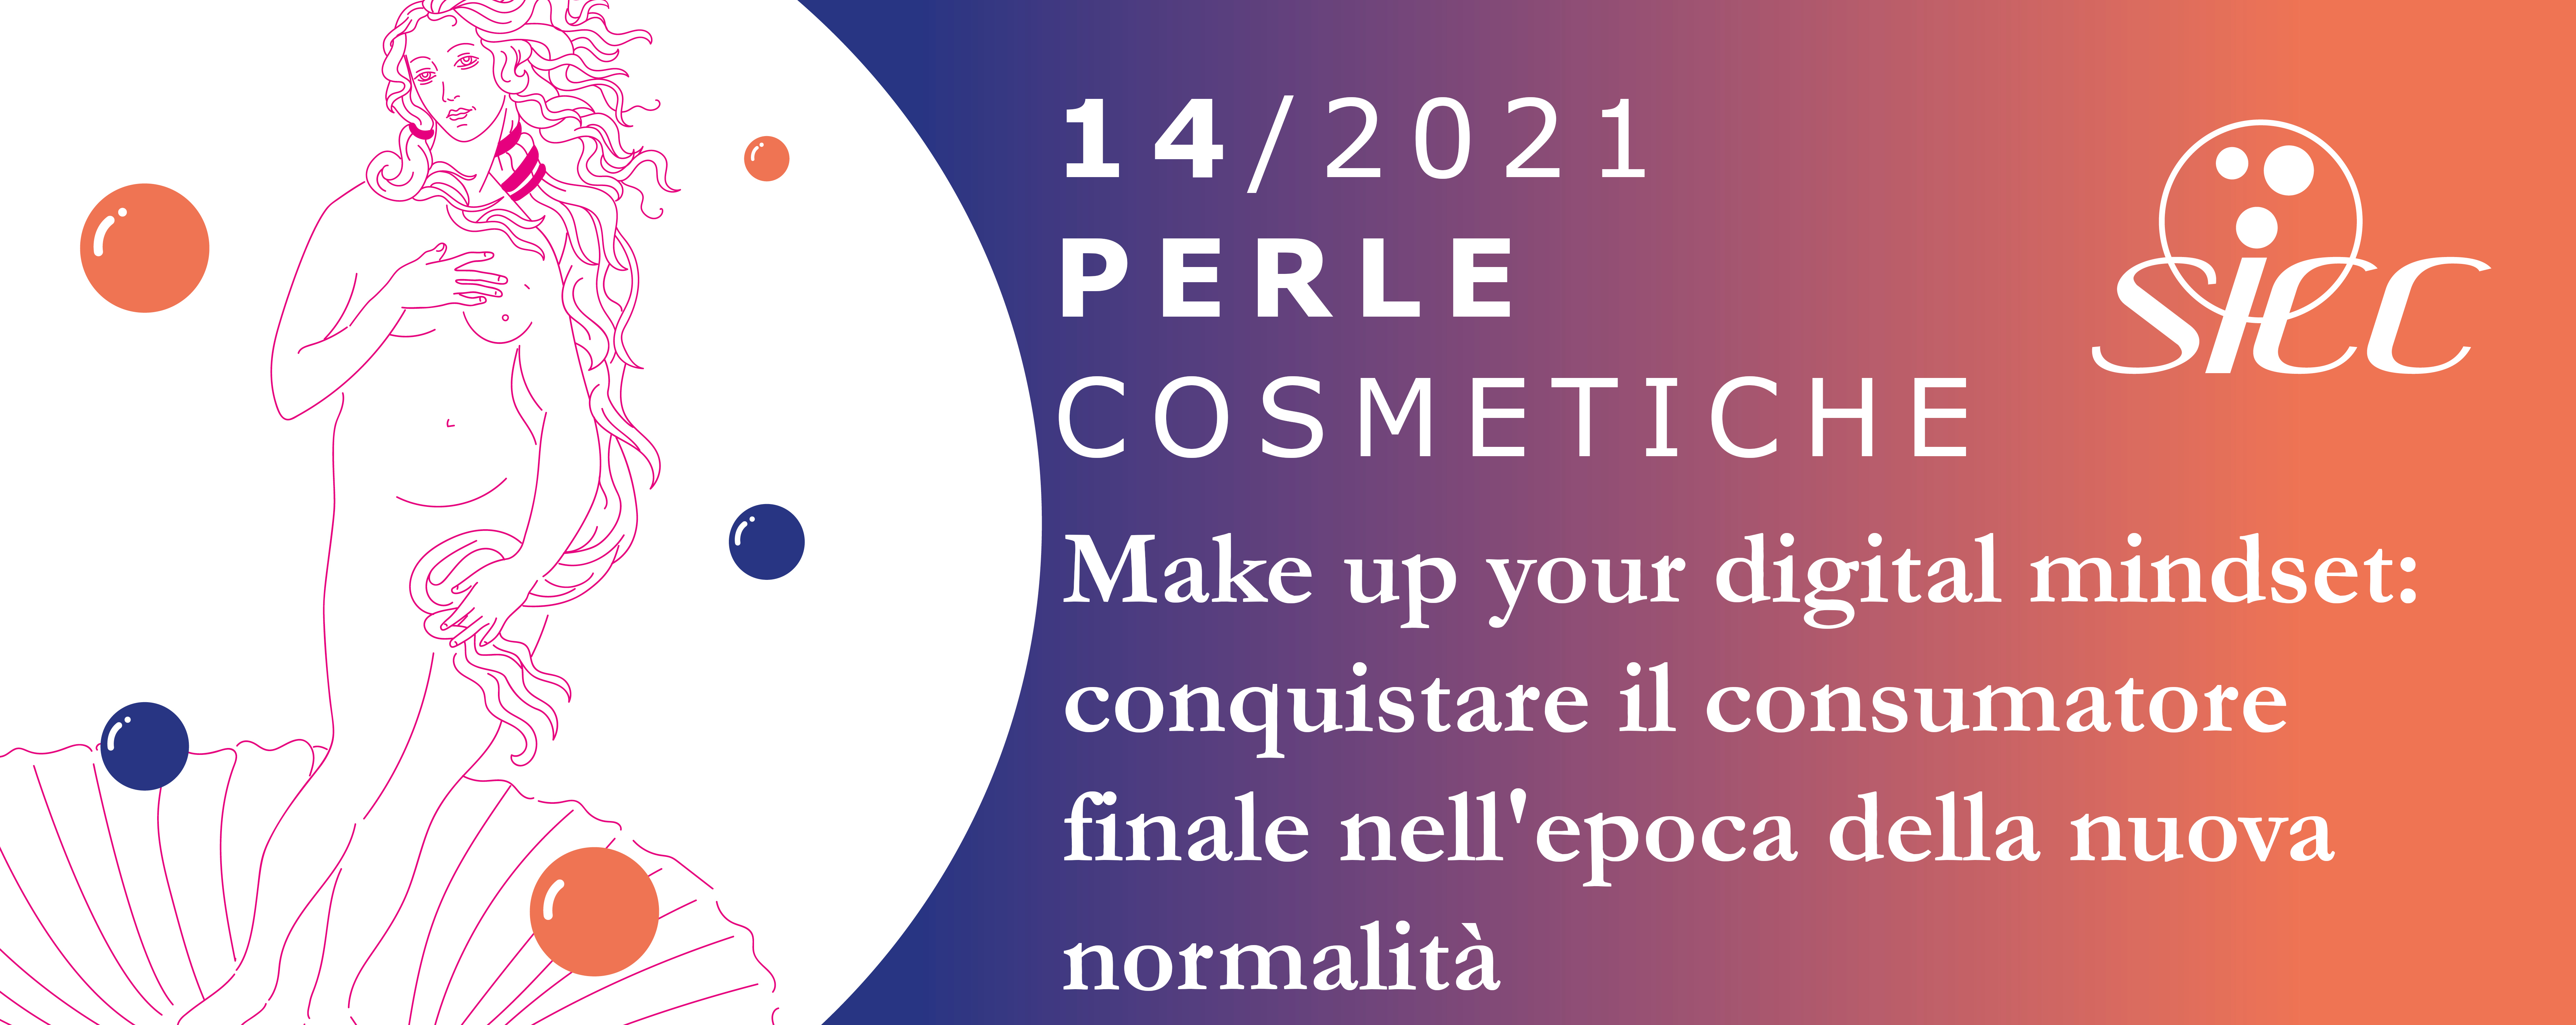 Perla Cosmetica N. 14/21: Make up your digital mindset: conquistare il consumatore finale nell’epoca della nuova normalità